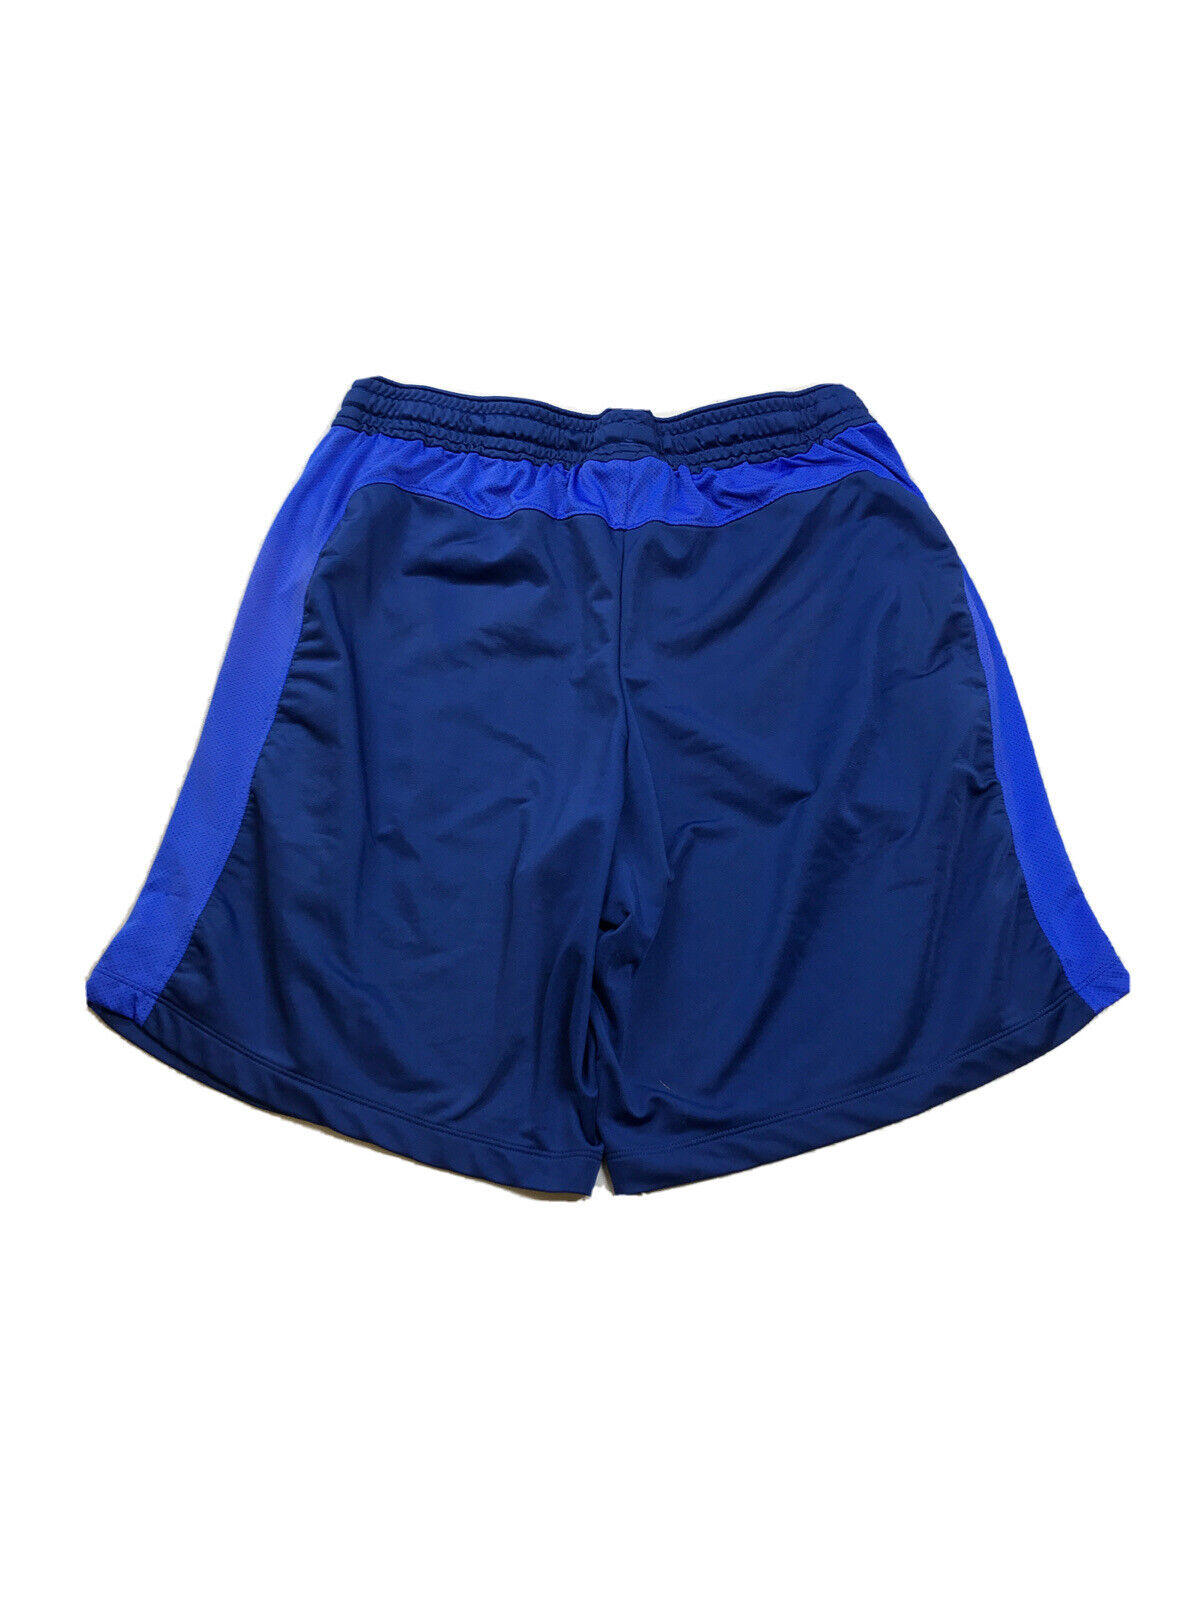 Under Armour Pantalones cortos deportivos HeatGear azules para hombre con bolsillos - L